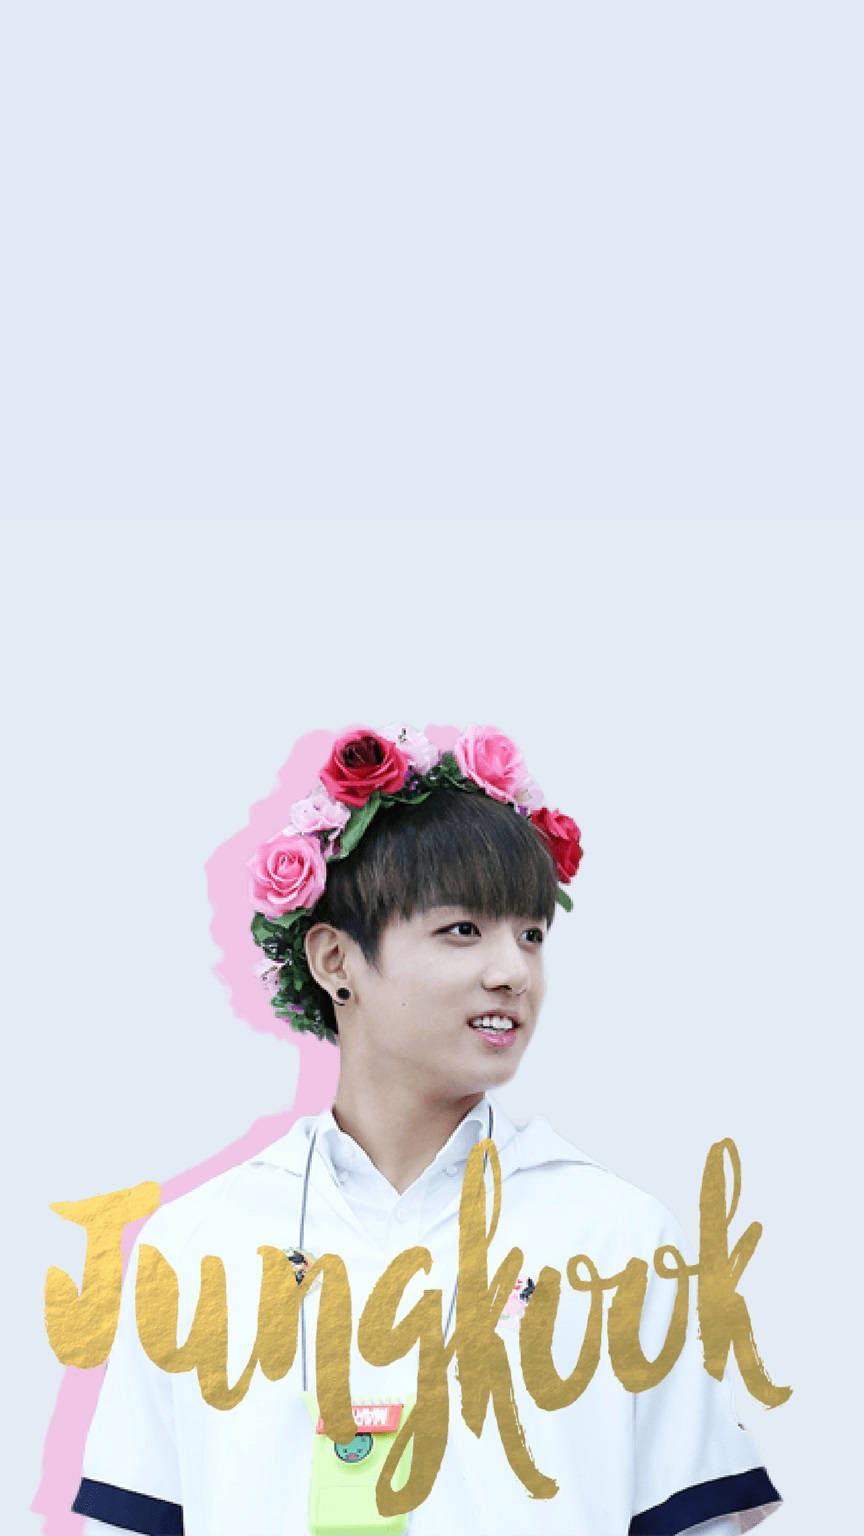 Cute Bts Jungkook In Pink Flower Crown Wallpaper